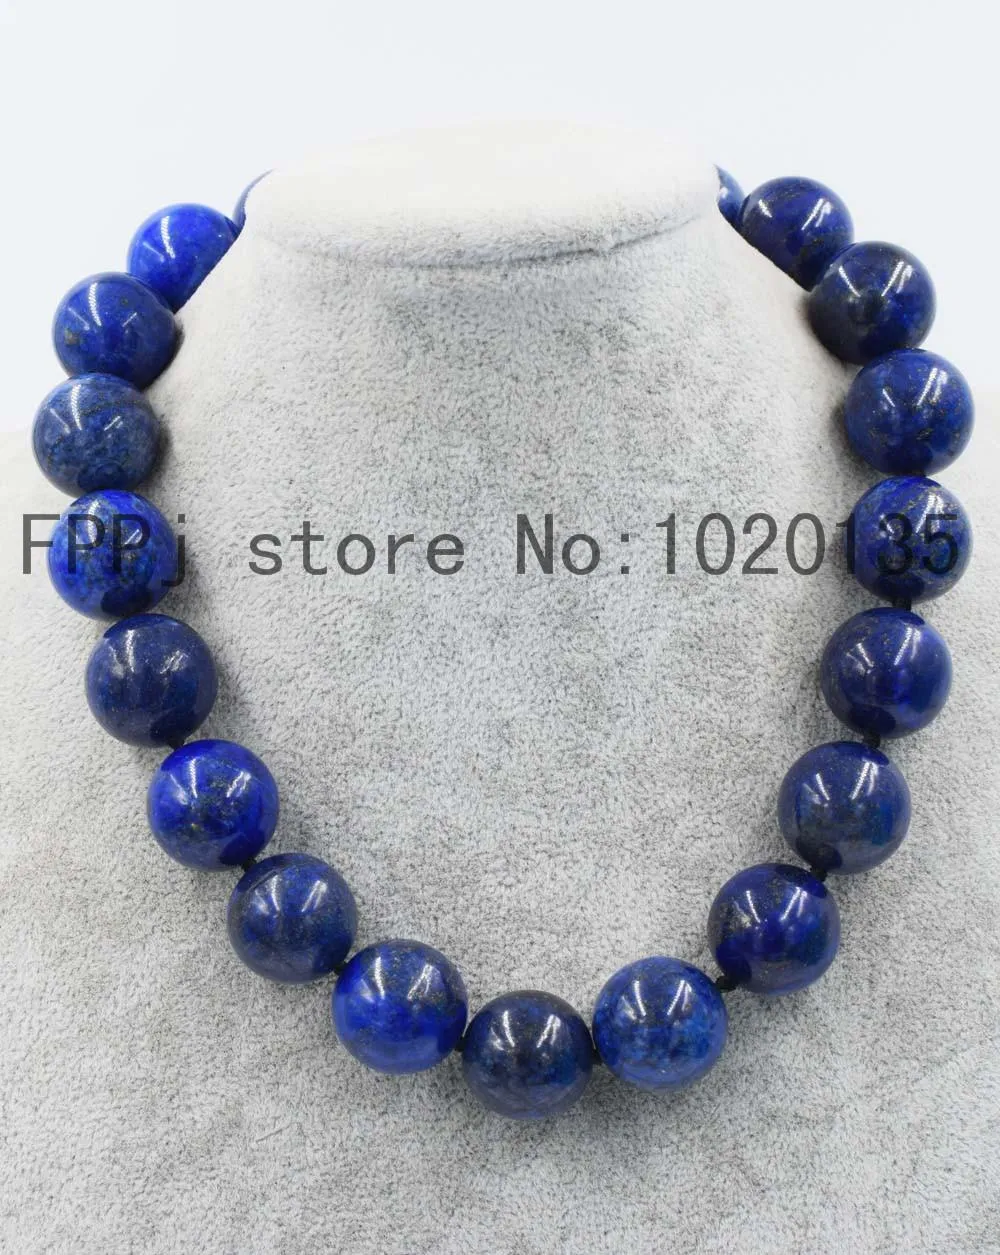 قلادات واو! Lapis Lazuli Round Blue 10 20mm Necklace 18inch Beads Beads FPPJ Nature